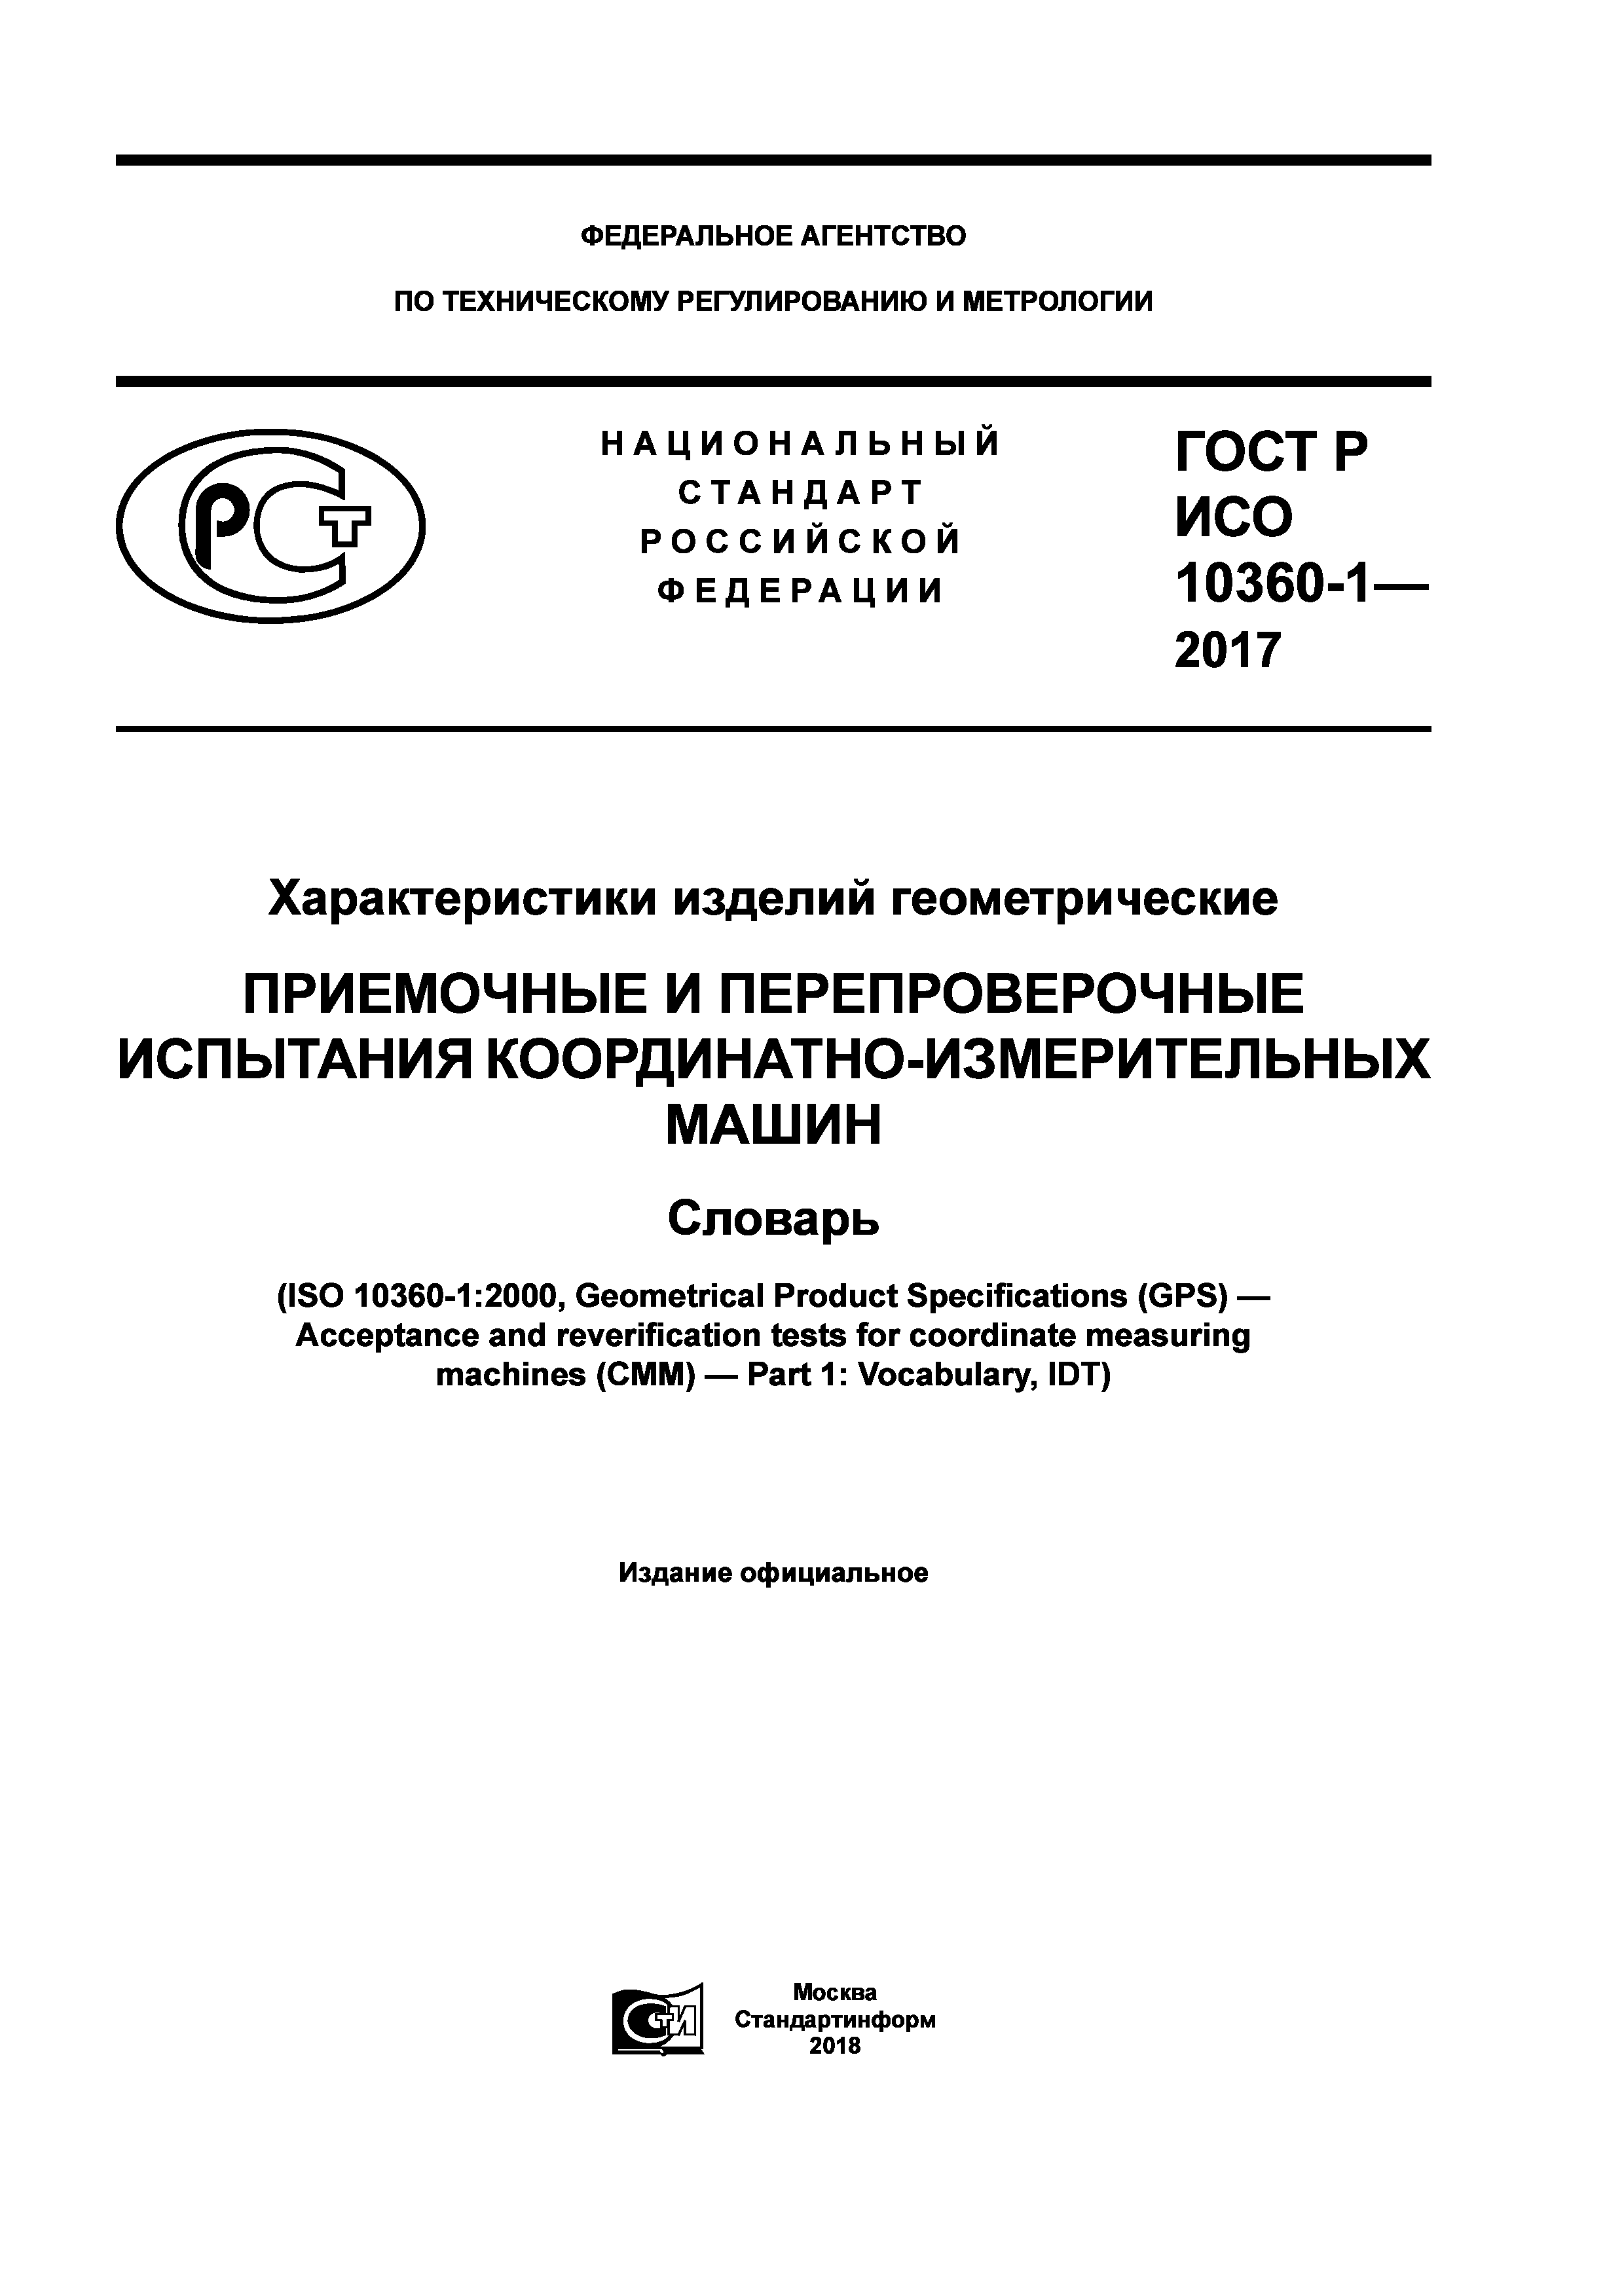 ГОСТ Р ИСО 10360-1-2017